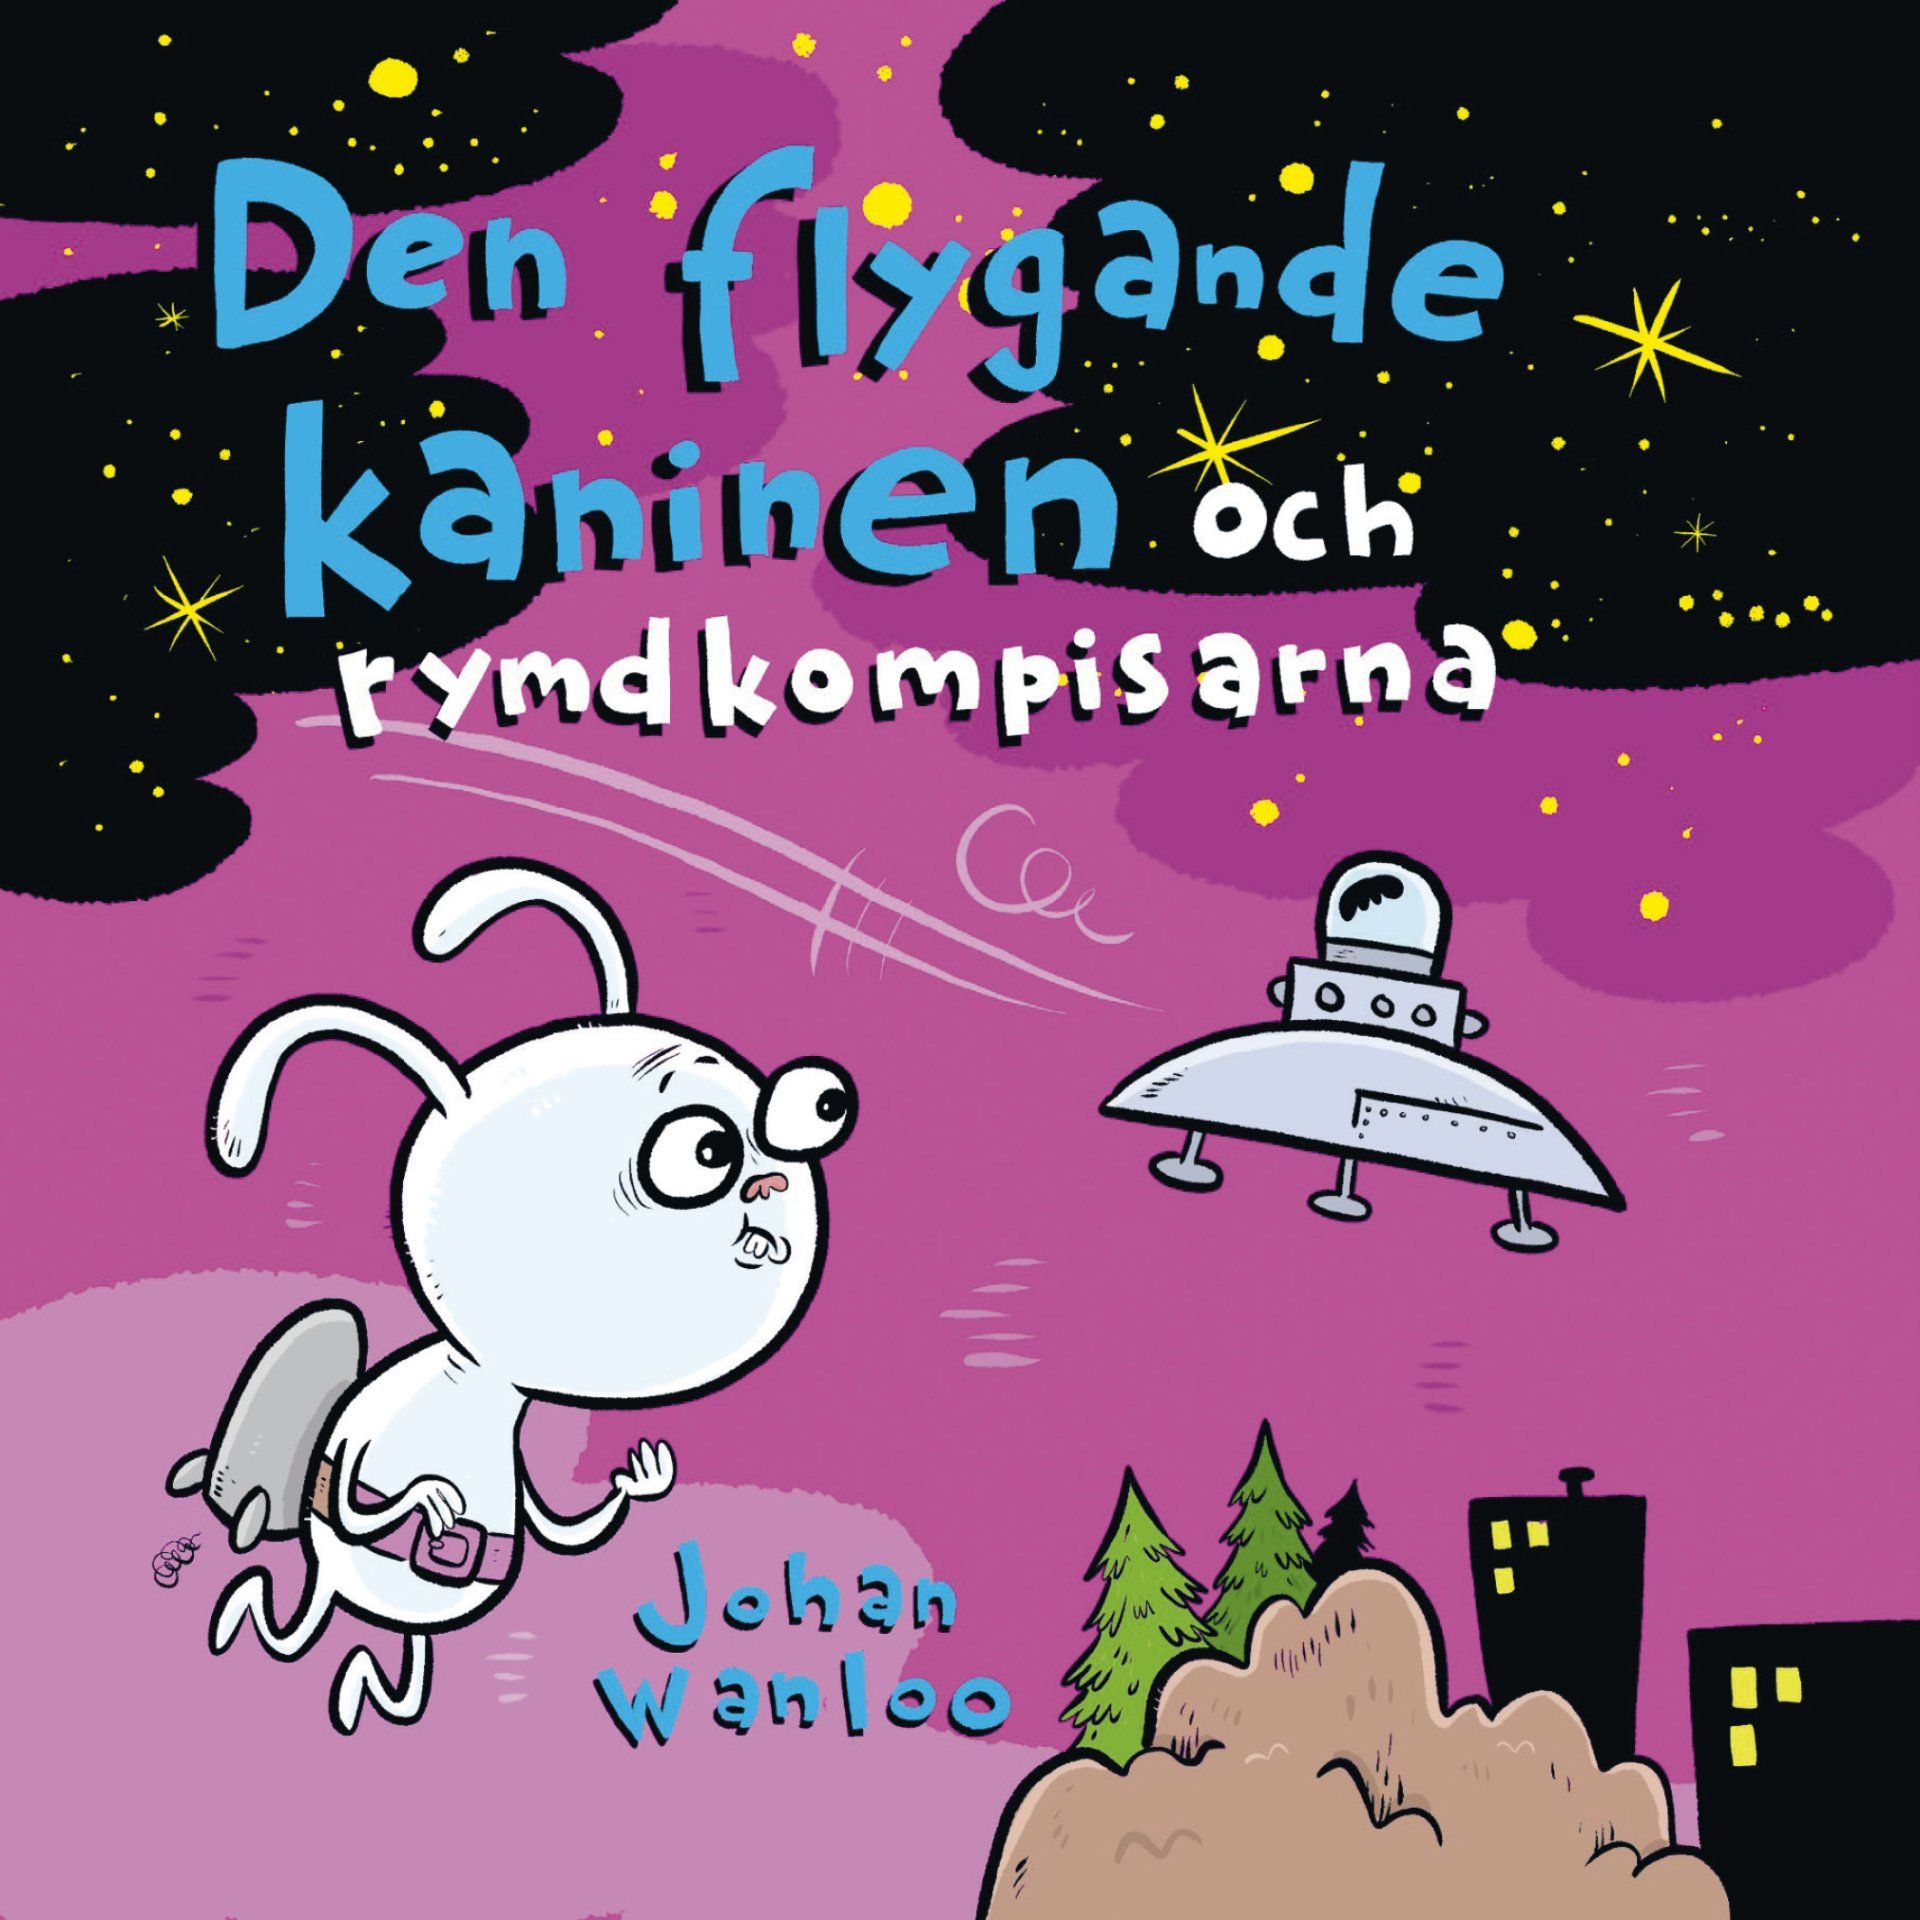 Den flygande kaninen och rymdkompisarna är skriven av Johan Wanloo på Stevali Bokförlag.